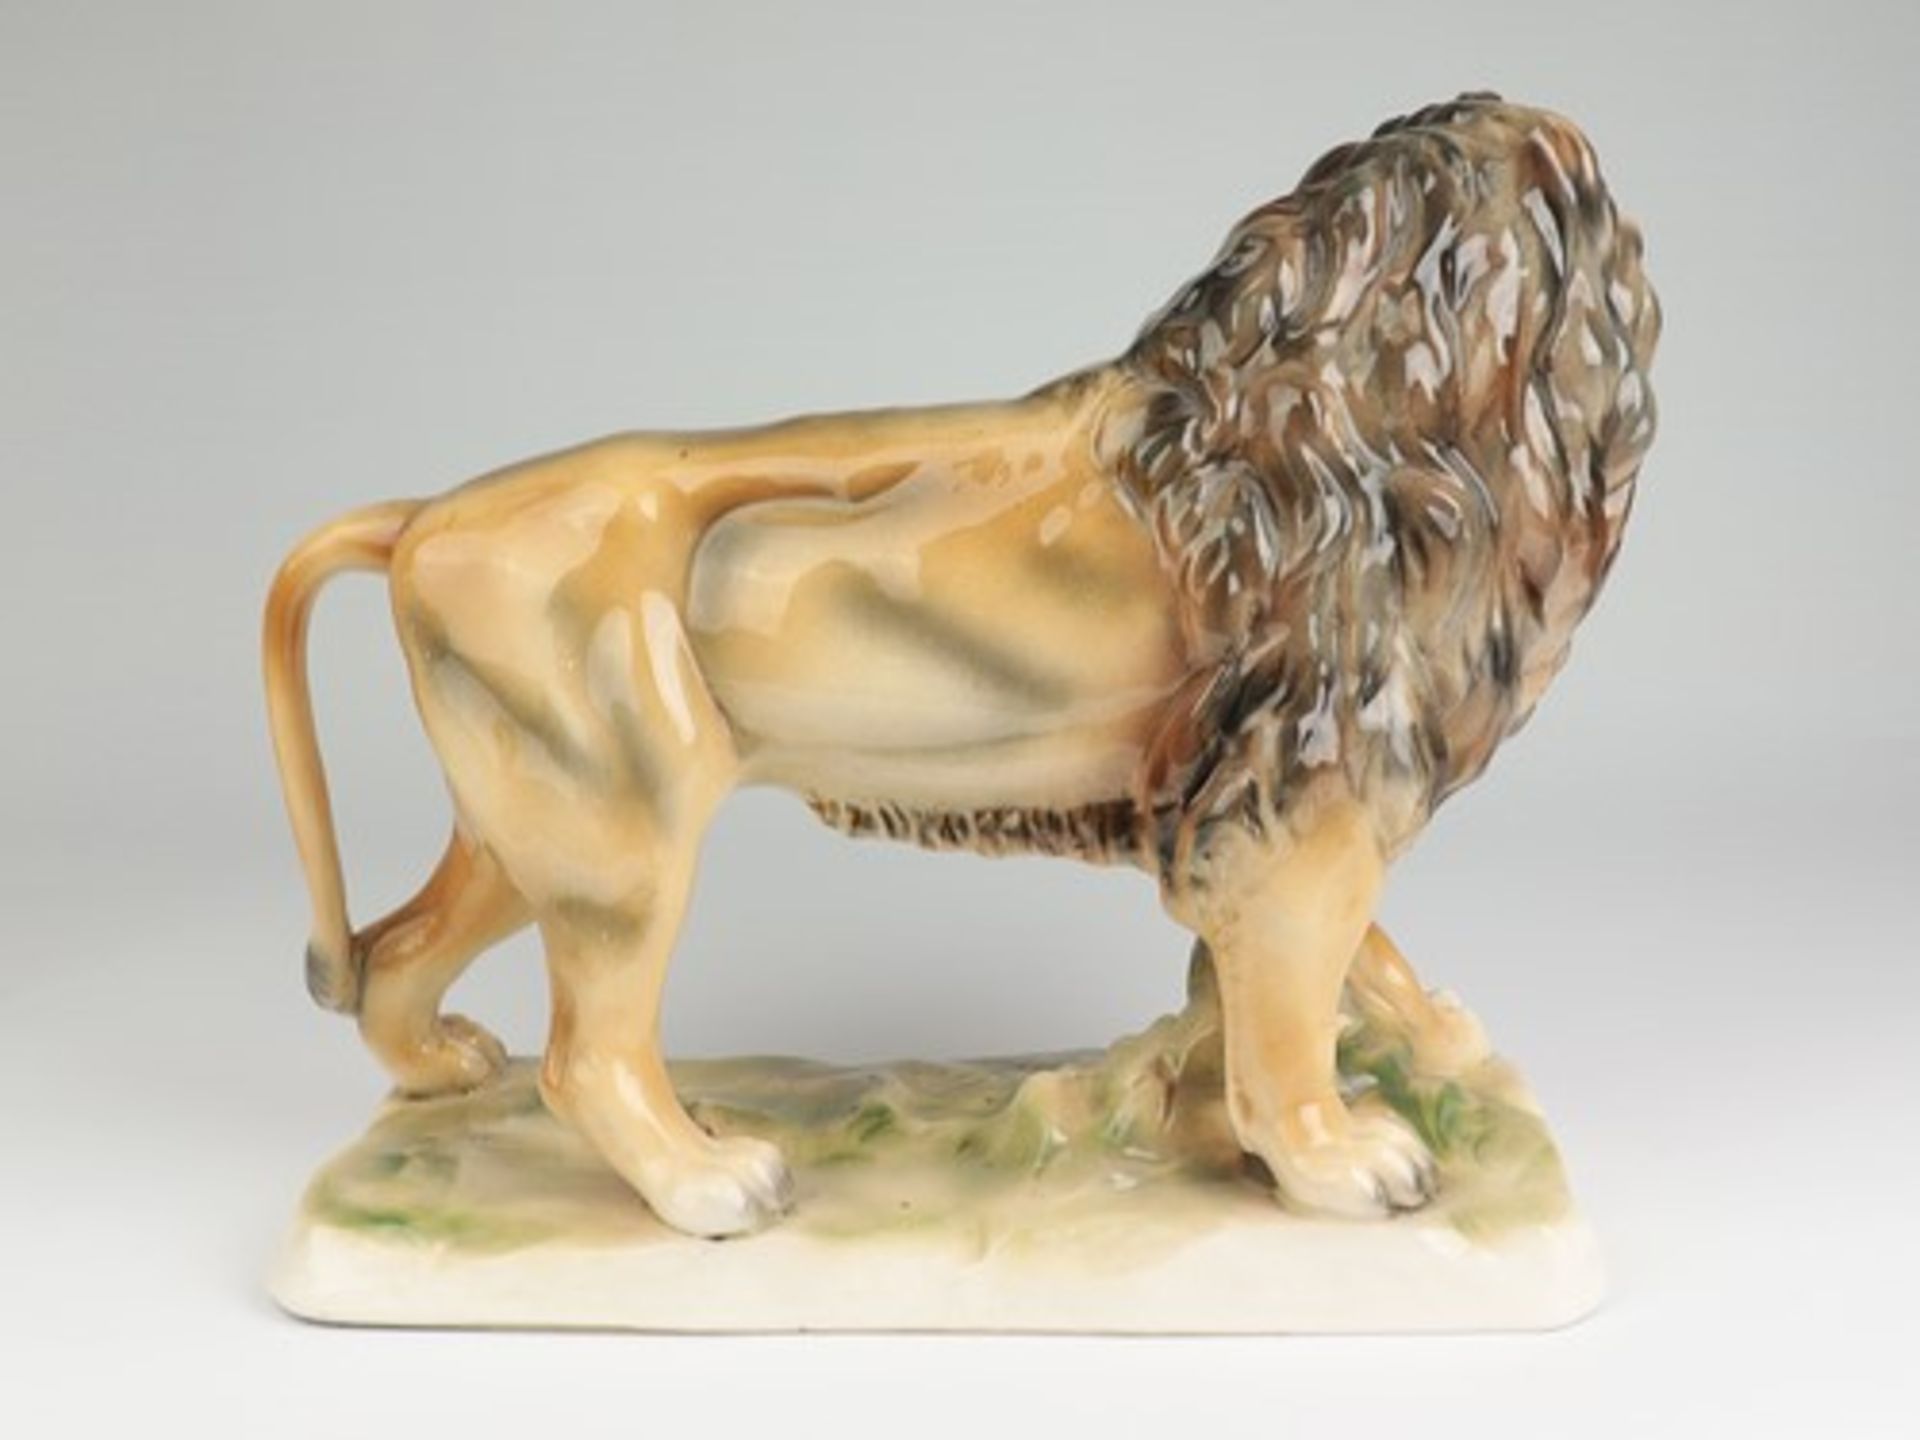 Sitzendorf - FigurStempelmarke, Steingut, vollplast. Figur eines schreitenden Löwen auf - Image 2 of 7